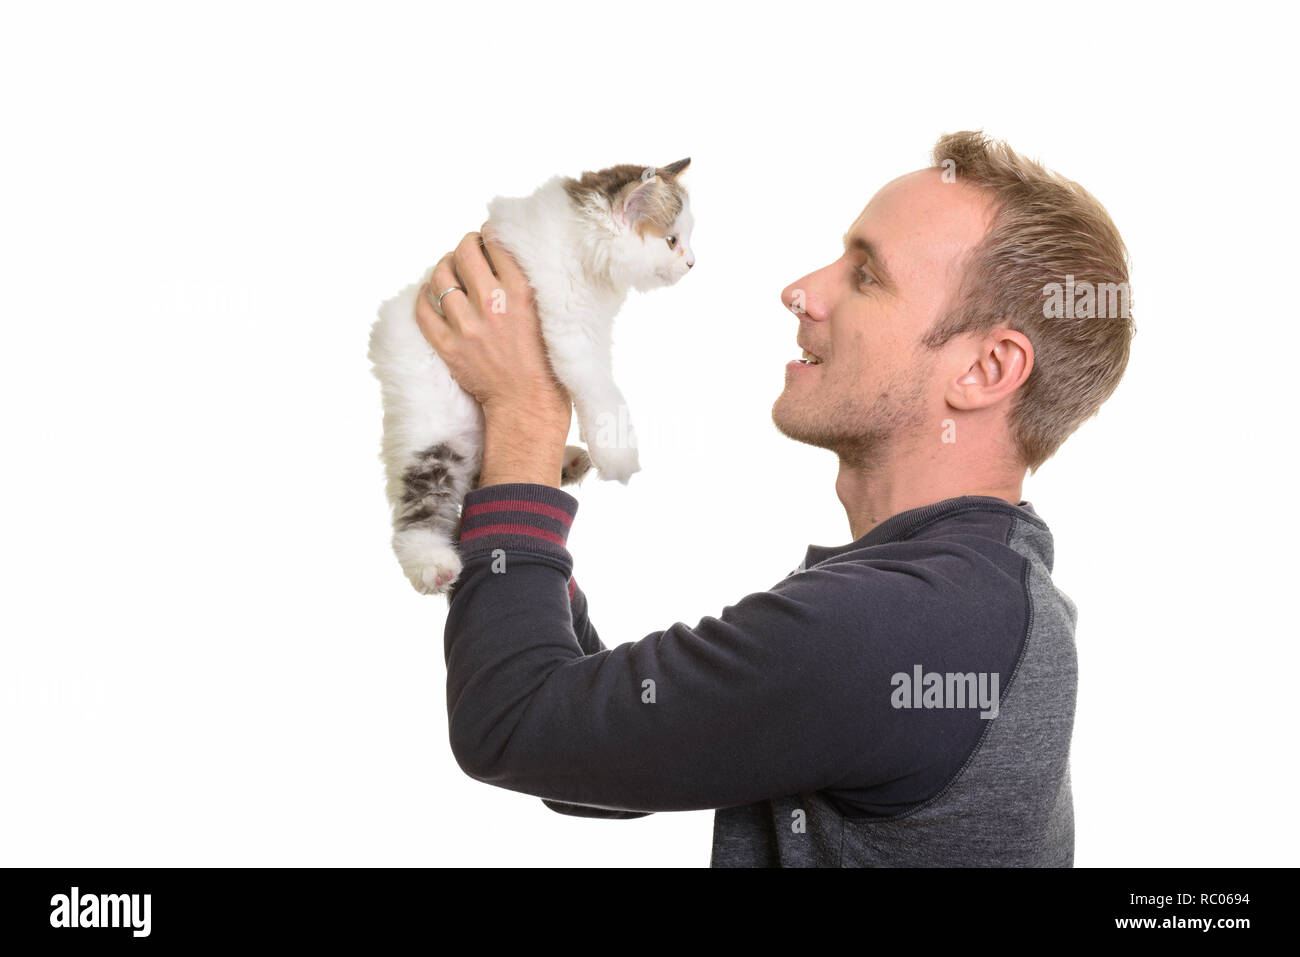 Profil anzeigen von Happy stattlichen kaukasischen Mann hält cute kitten Stockfoto